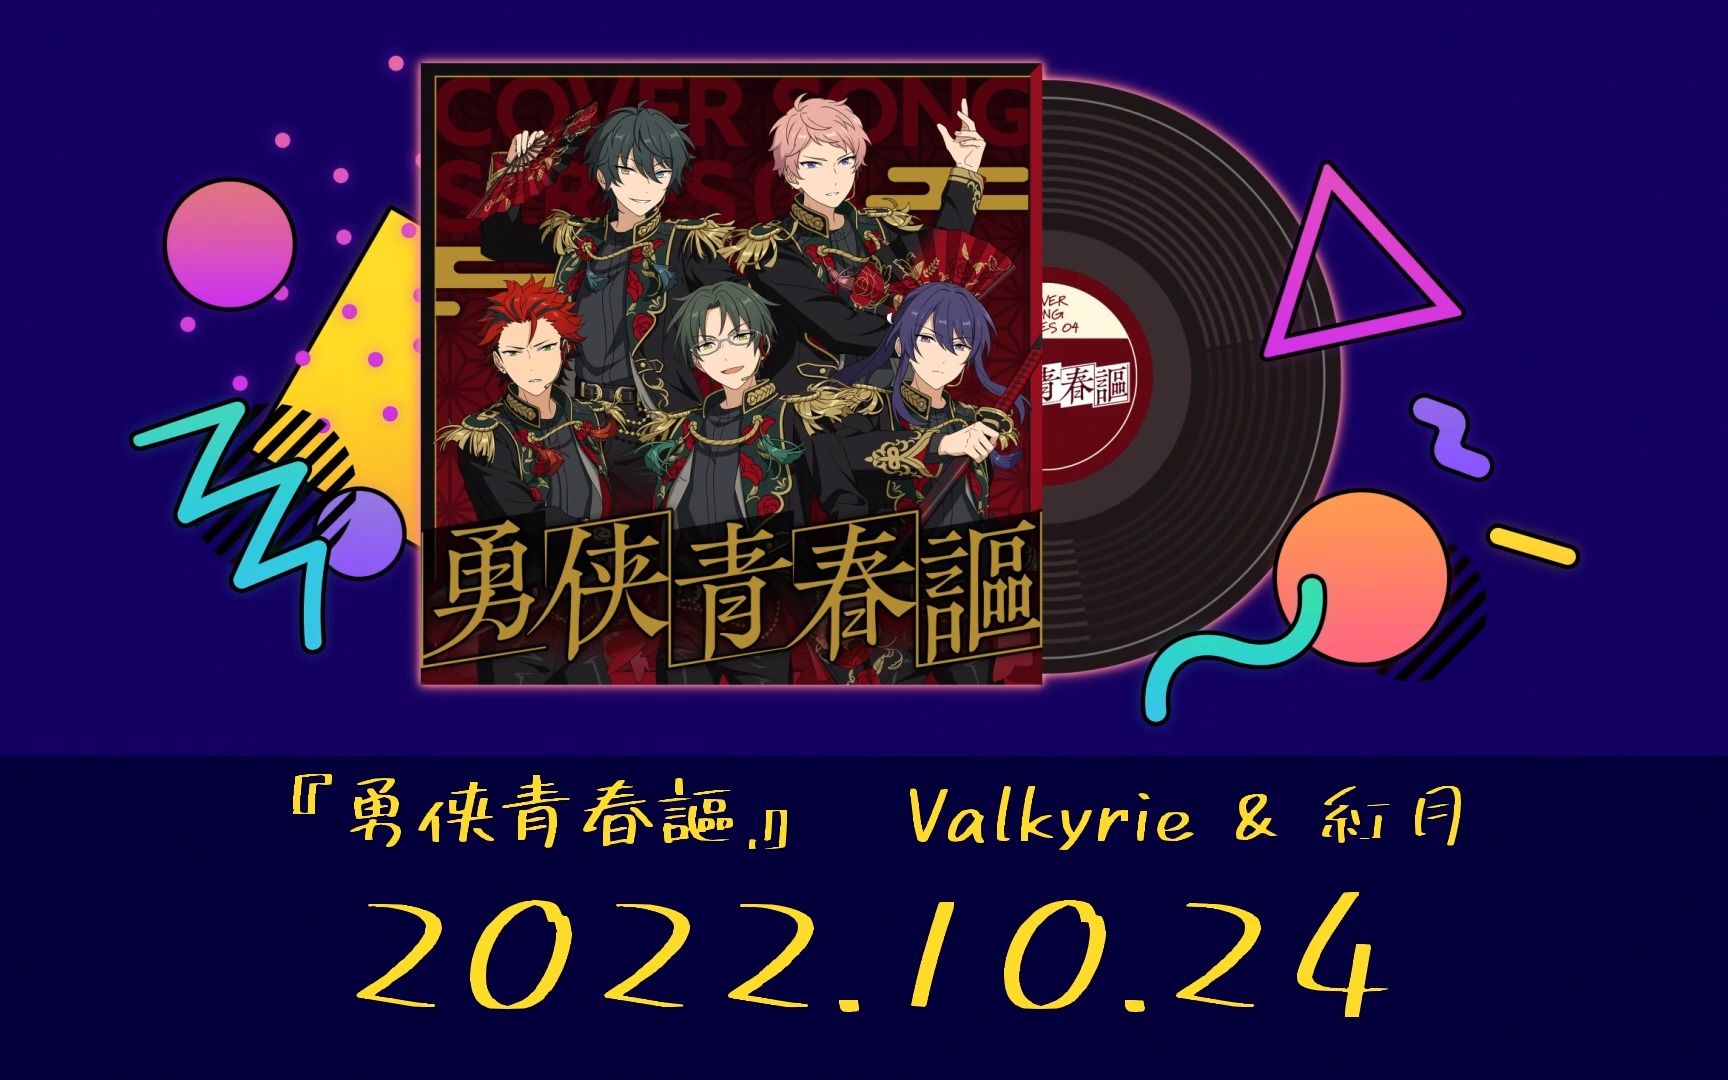 【偶像梦幻祭!!】翻唱计划COVER SONG SERIES 04『Valkyrie & 紅月』(翻唱内容：勇侠青春謳)